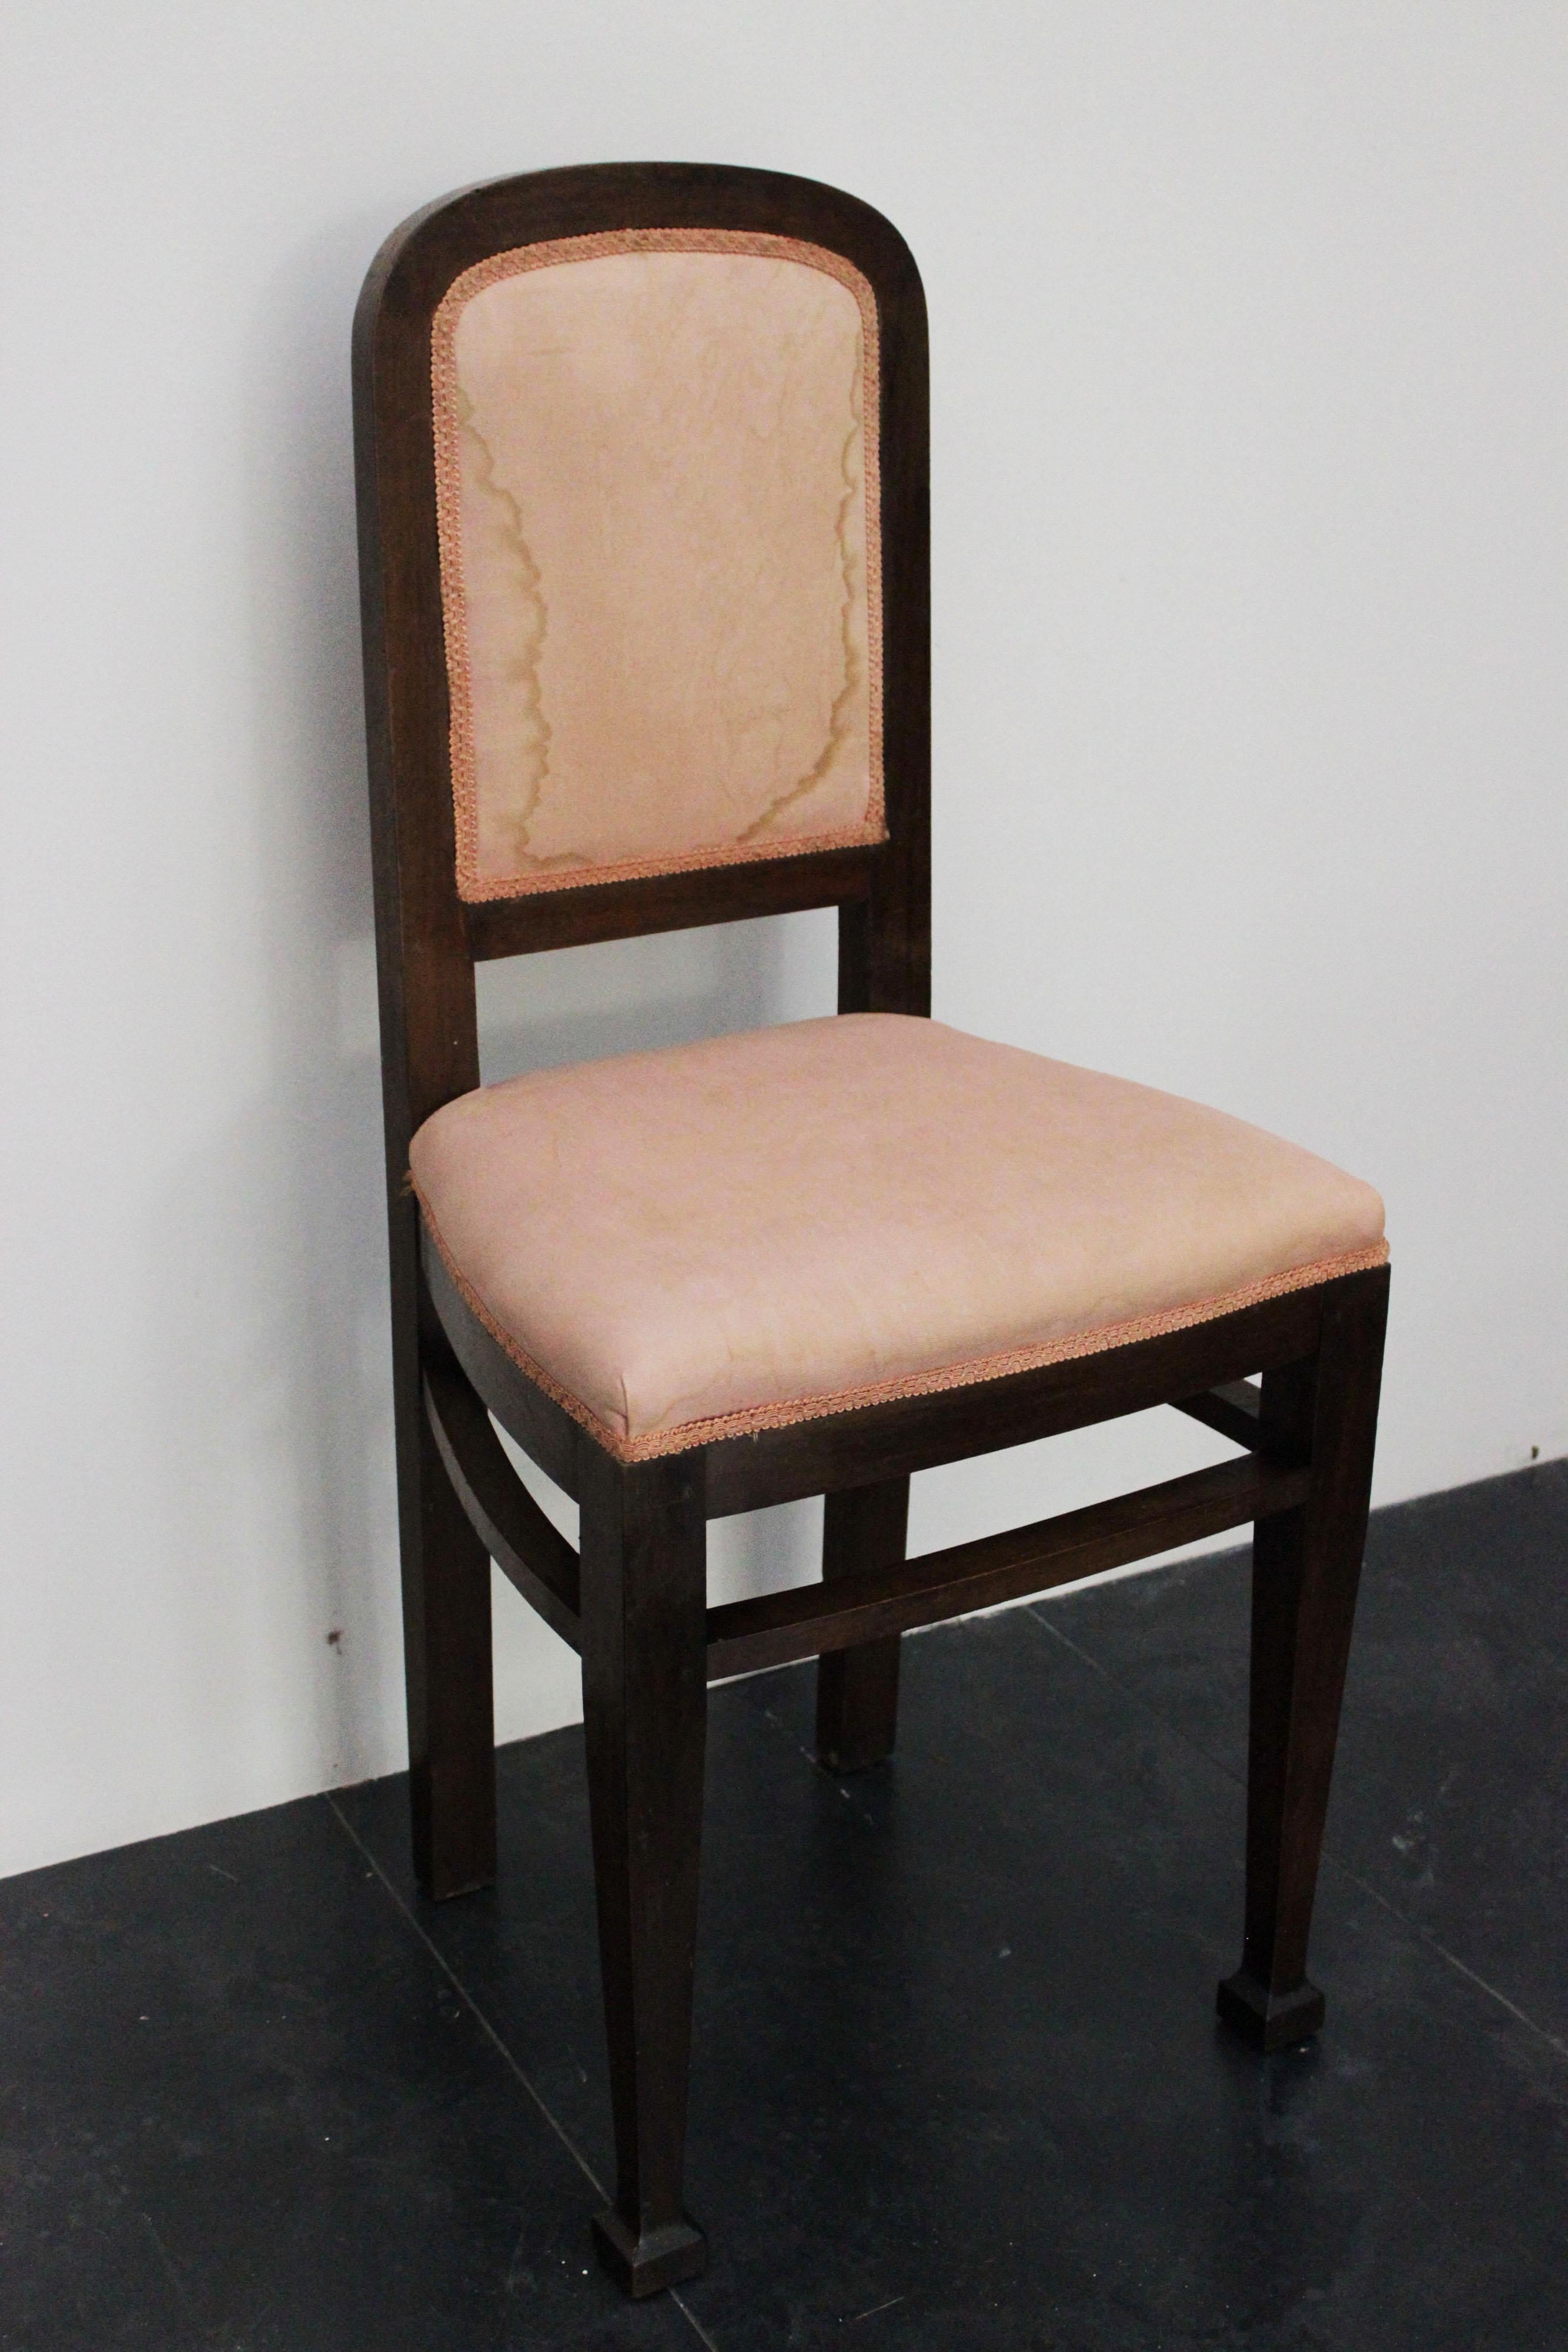 2 Art-Deco-Stühle aus Nussbaumholz, Defekt in der Seidenpolsterung.
Die Verpackung mit Luftpolsterfolie und Kartonagen ist inbegriffen. Wenn die hölzerne Verpackung benötigt wird (begast Kisten oder Kisten) für US und internationalen Versand, ist es